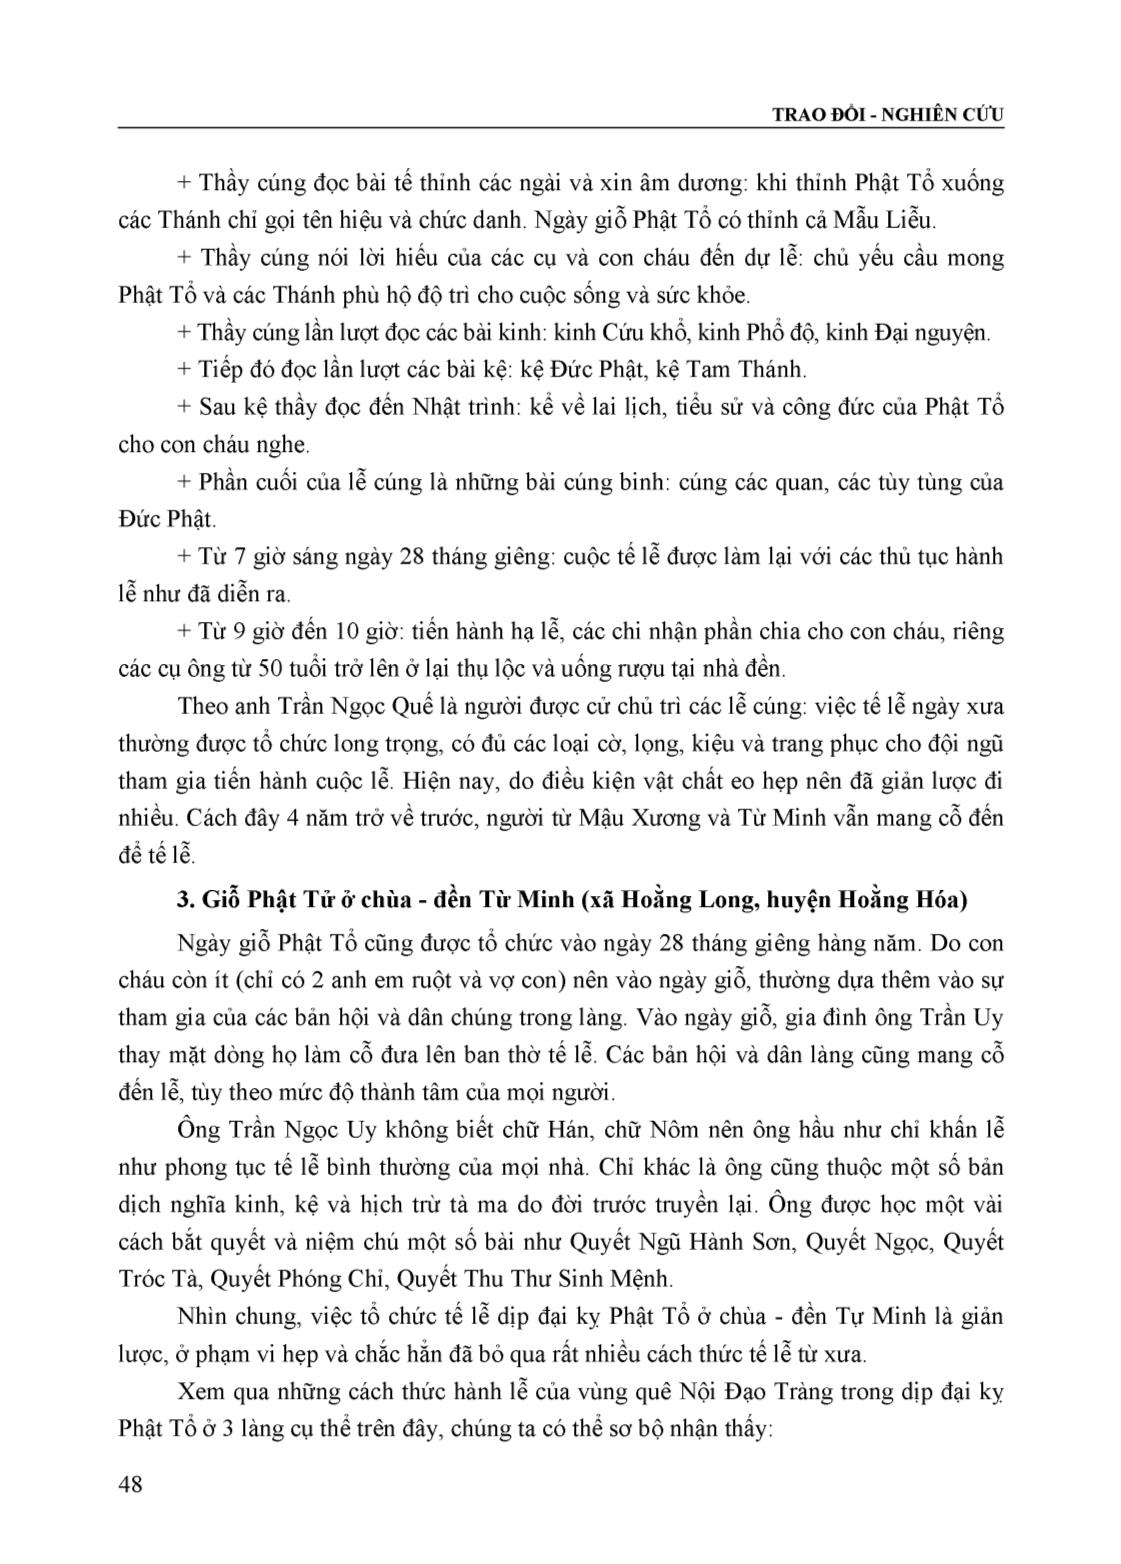 Hành lễ đại kỵ của dòng Nội Đạo Tràng ở Thanh Hóa trang 7